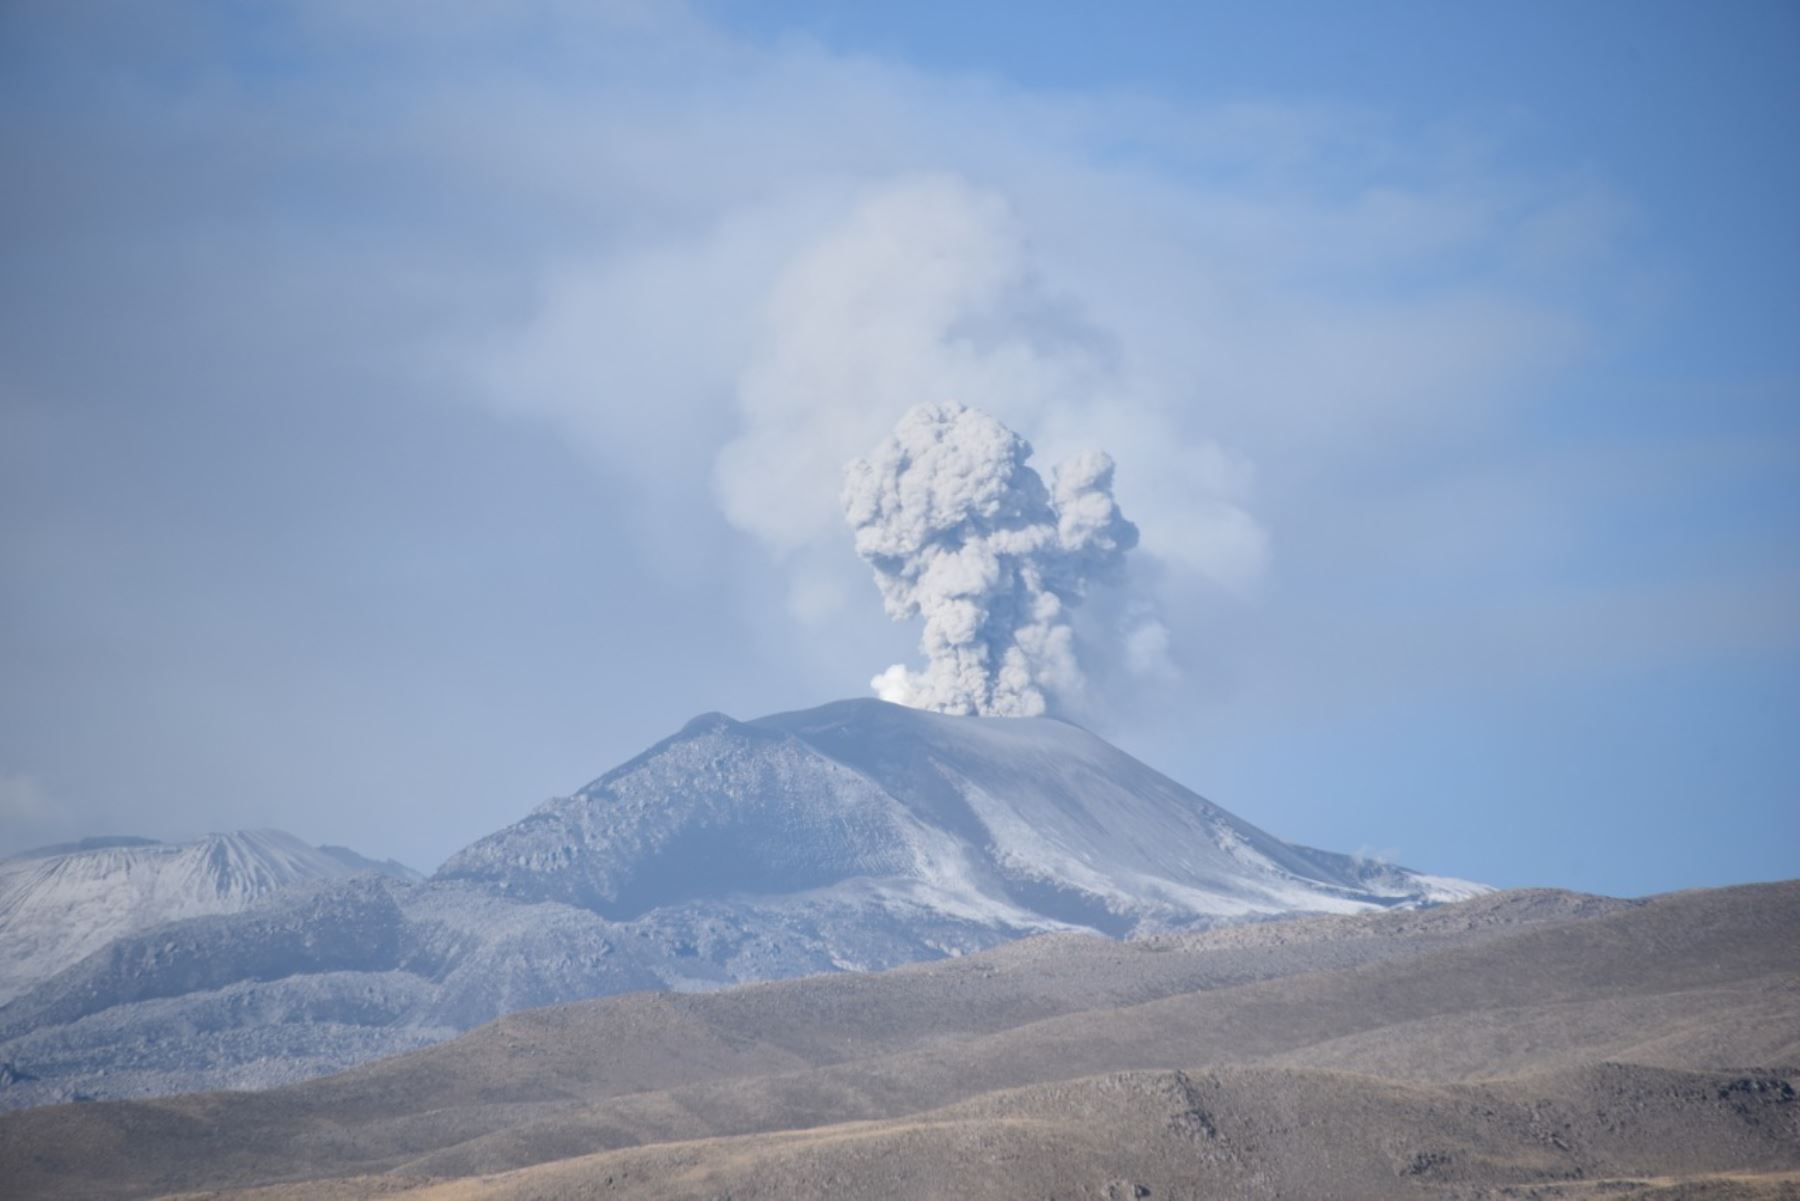 El volcán Sabancaya, considerado el segundo más activo del Perú, cumple cuatro años de proceso eruptivo, iniciado el 6 de noviembre del 2016. Foto: INGEMMET